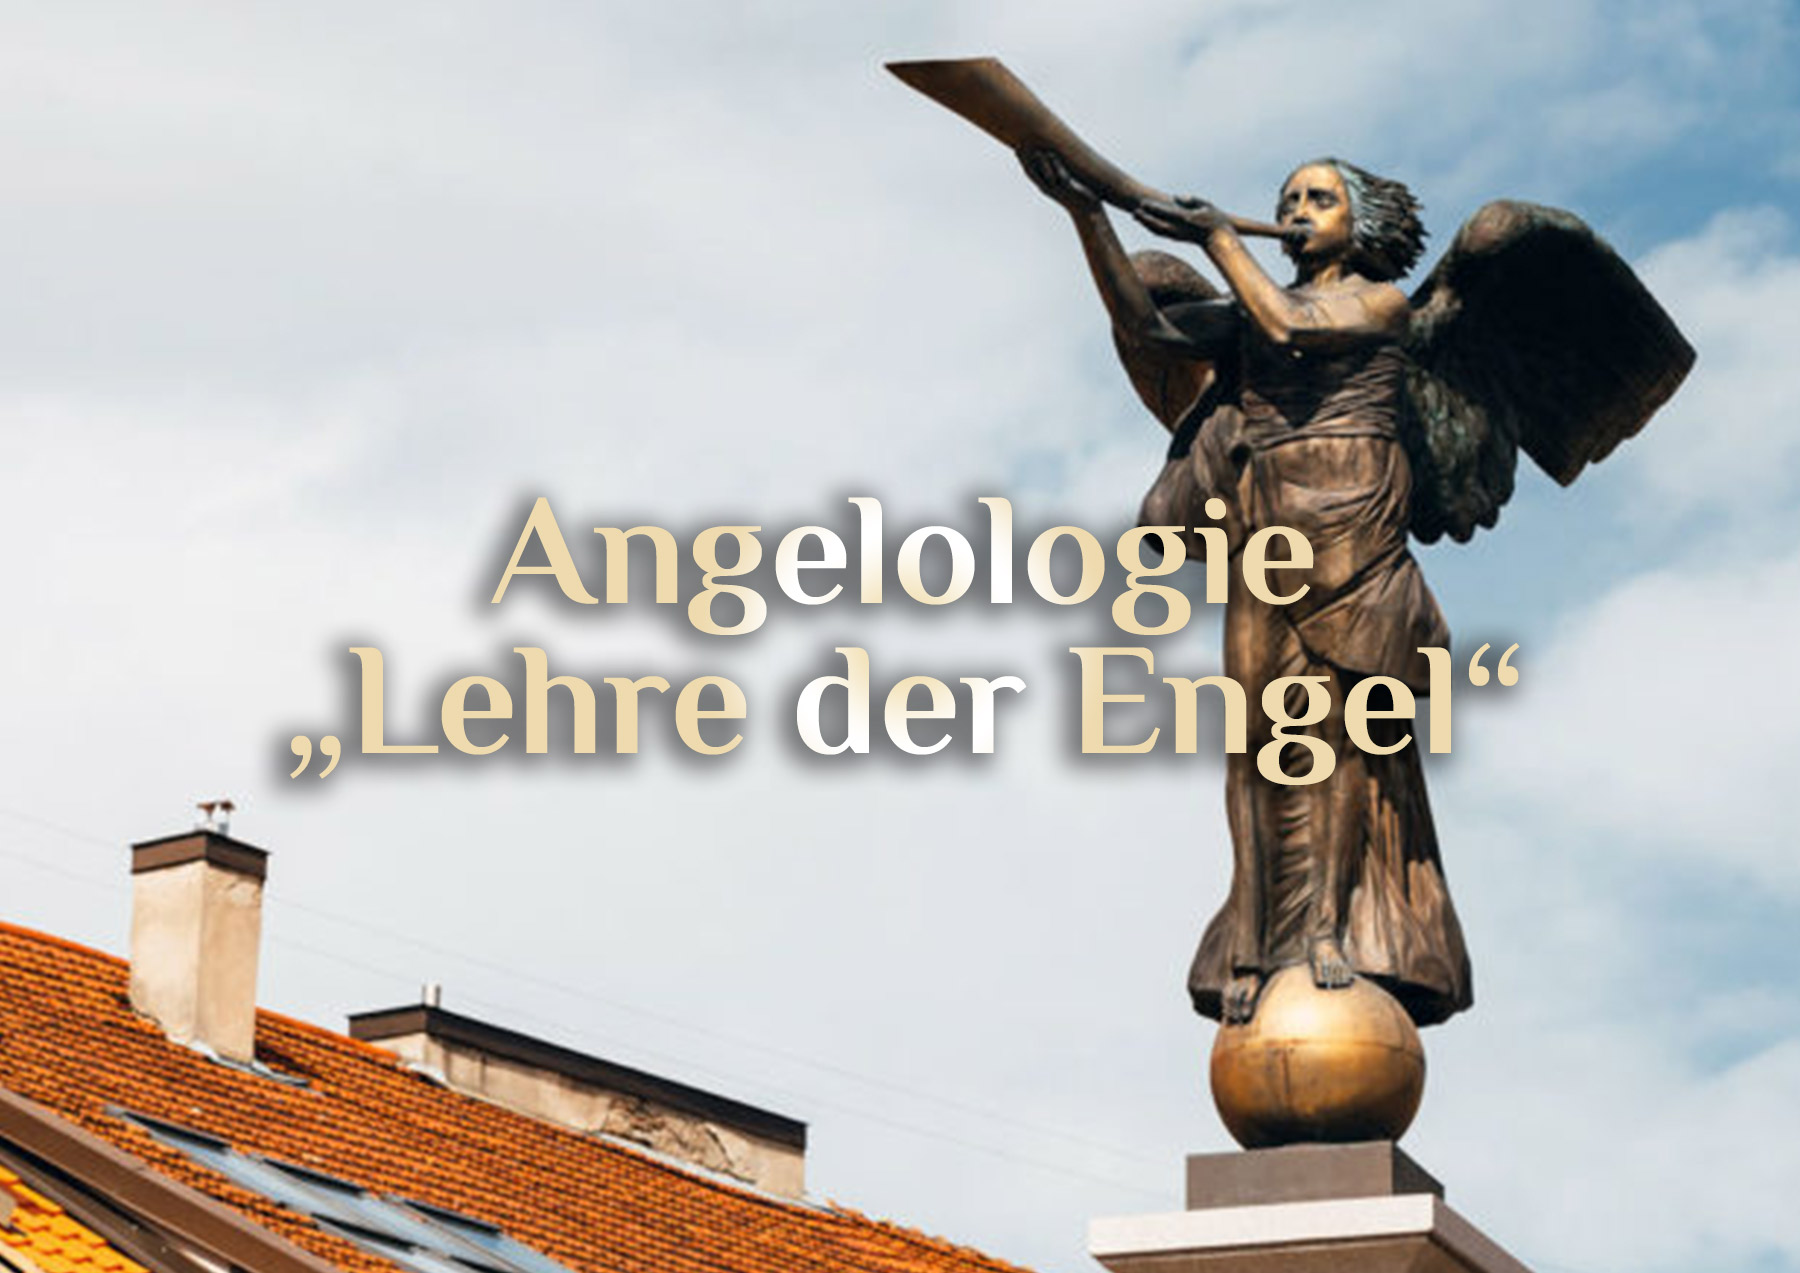 Elementare Angelologie 👼🏻 Hierarchie der Engel